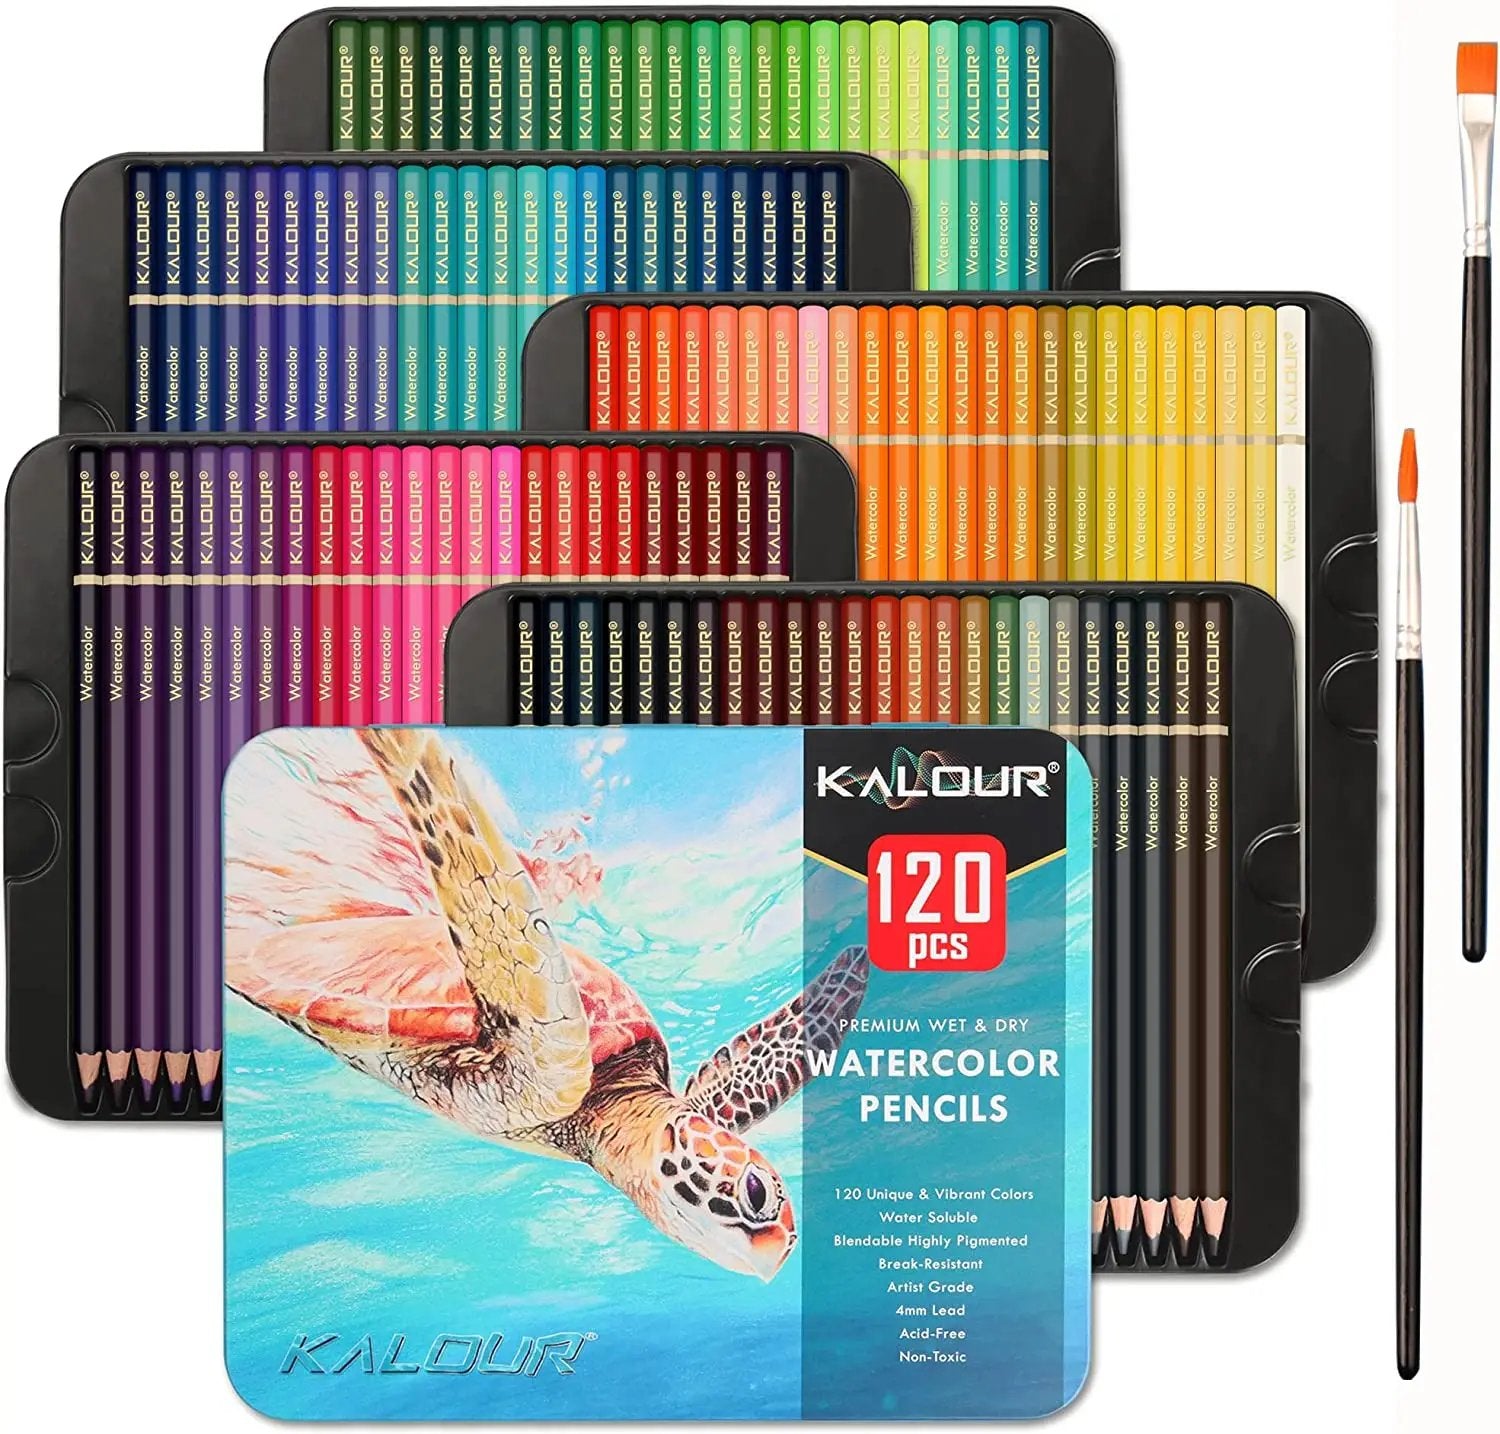 KALOUR 120 Premium Wet Dry Watercolor Pencils Set with 2 Brush - TTpen